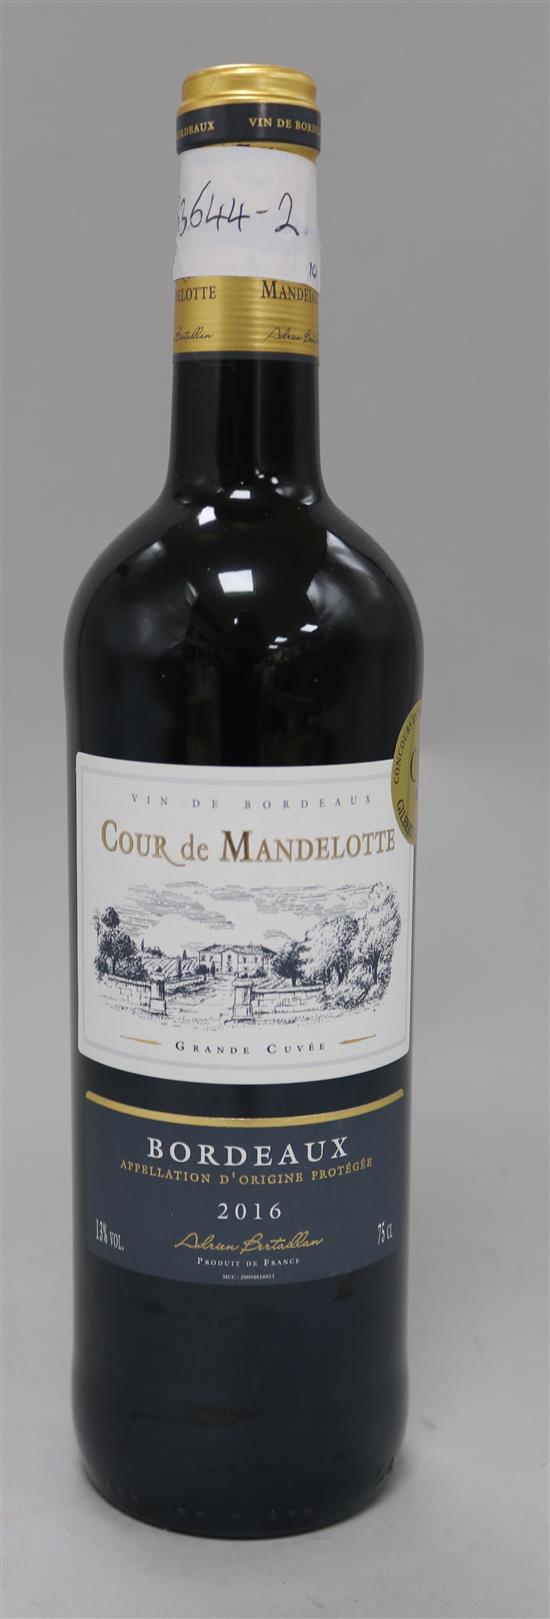 Ten bottles of Cour de Mandelotte Bordeaux